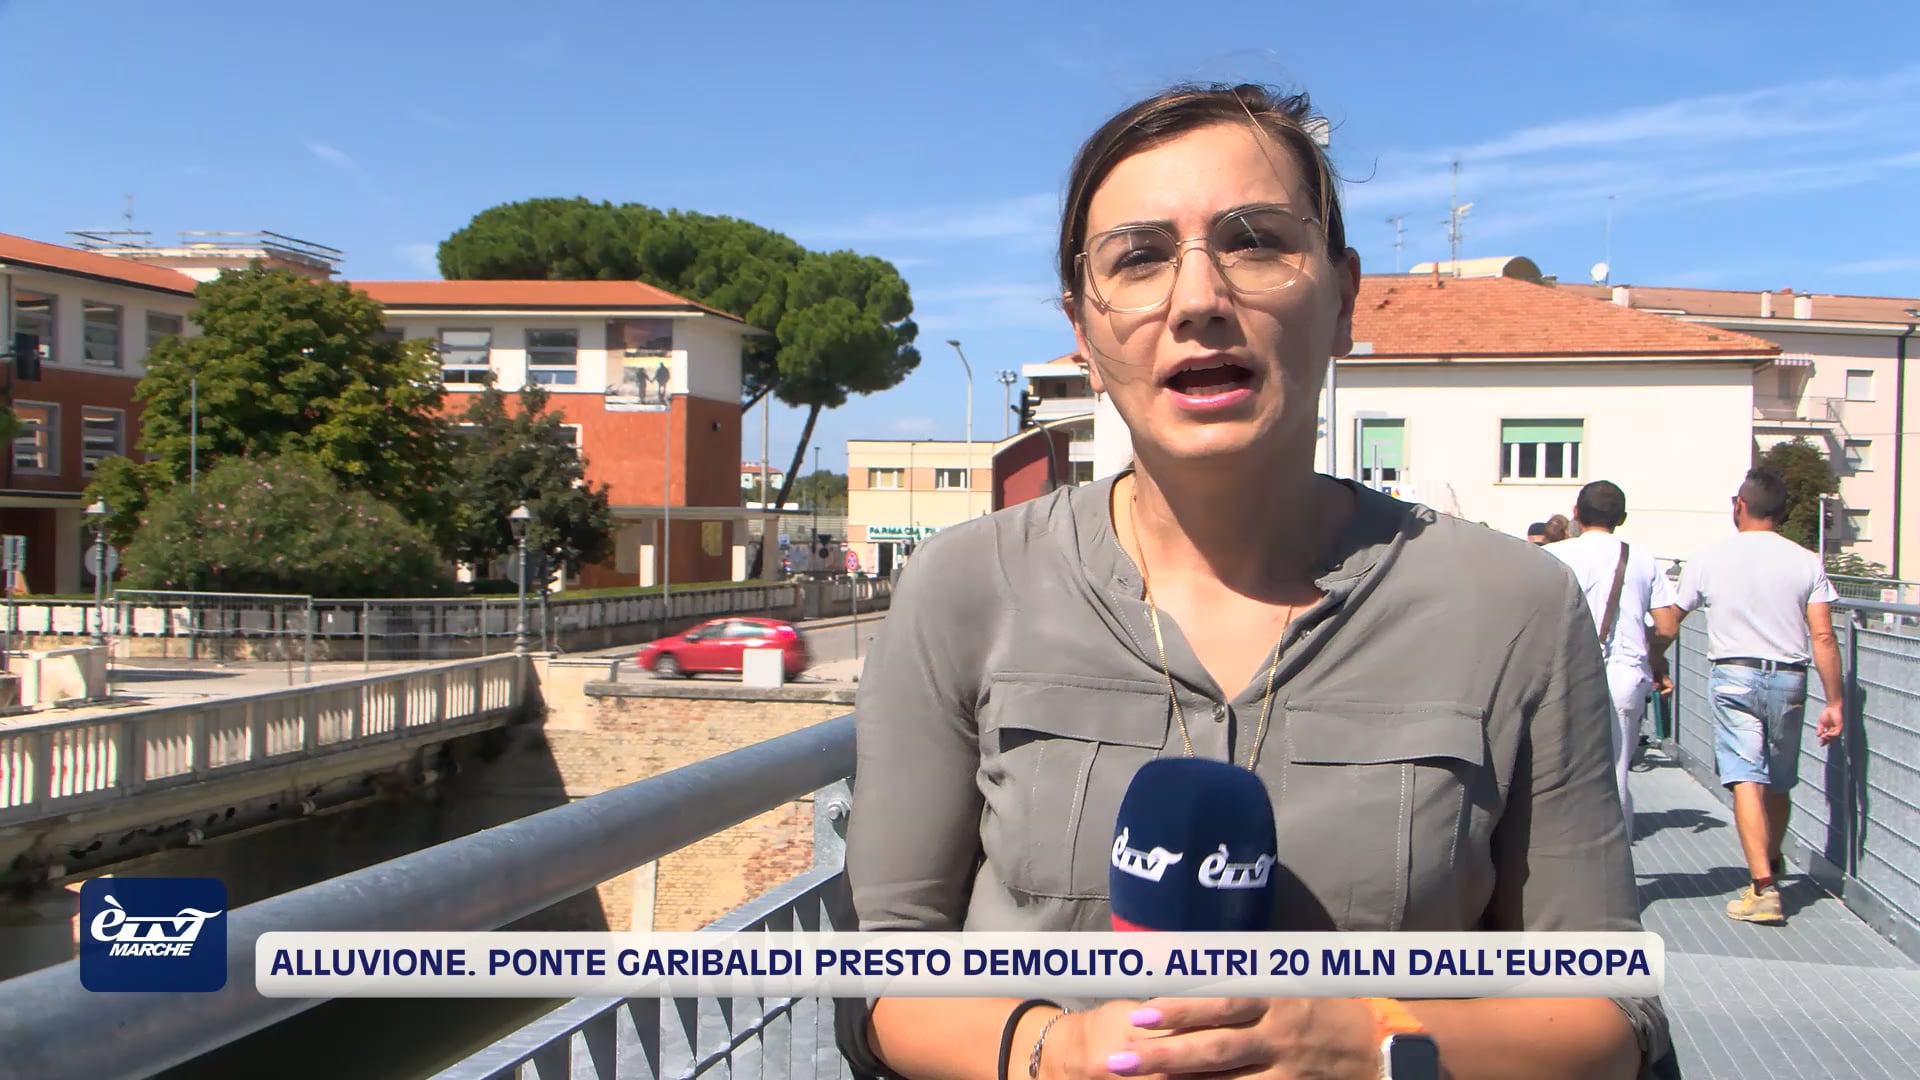 Alluvione. Ponte Garibaldi presto demolito. Altri 20 milioni dall'Europa - VIDEO